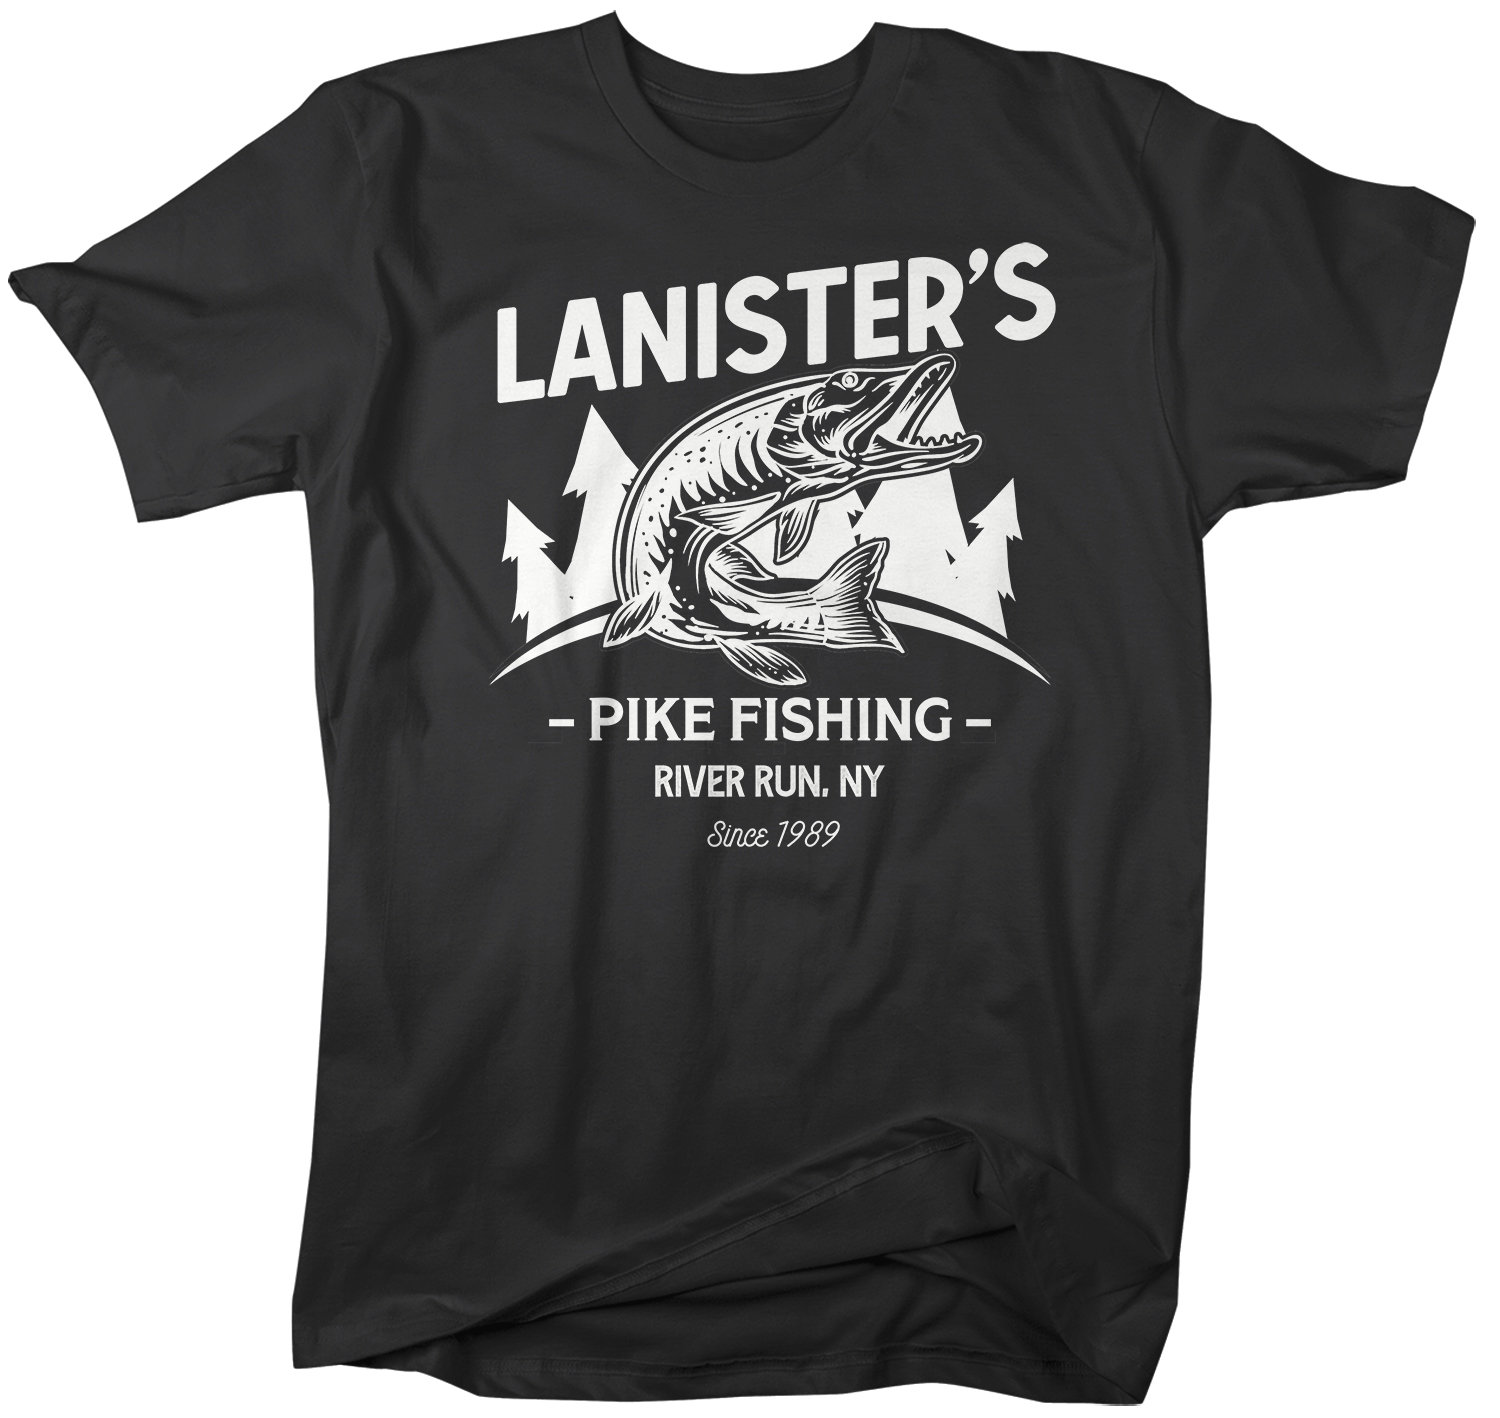 Personalized Fishing T-Shirt Fisherman Trip Pike Fishing Shirt Expedition Tee Shirt Men's Gift Custom Shirts